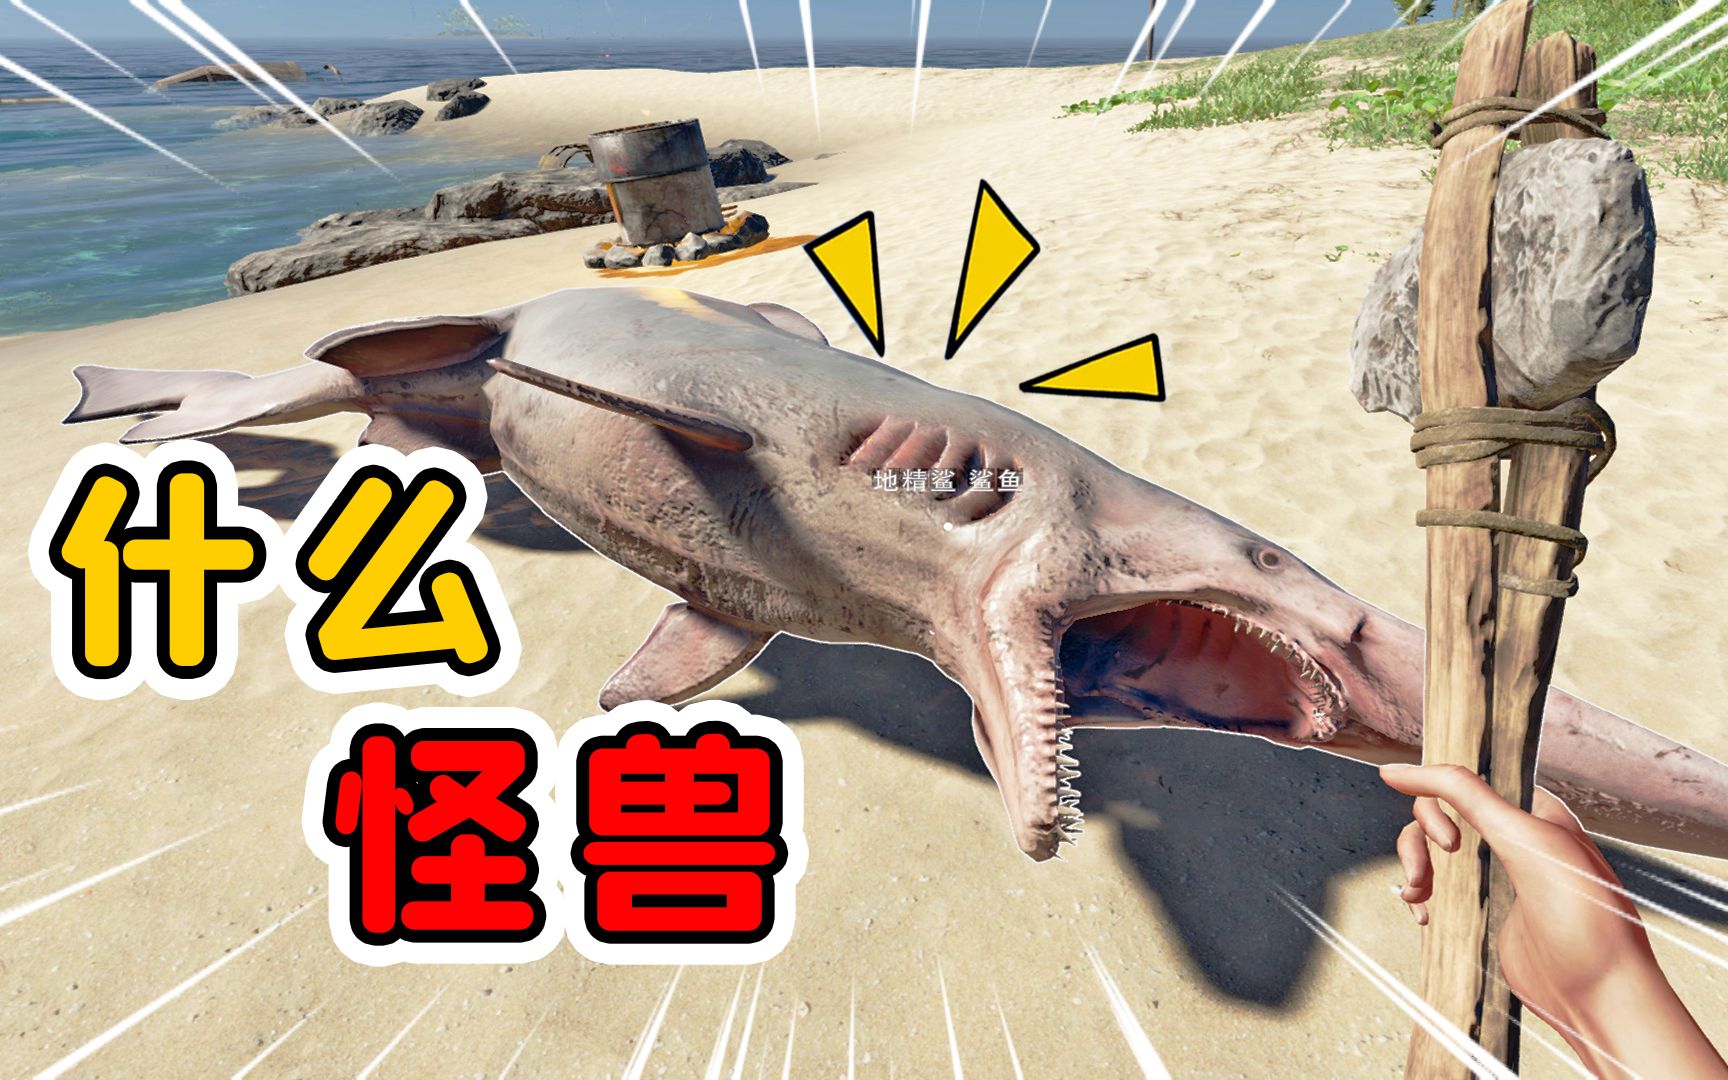 荒岛求生36:首次发现哥布林鲨,妥妥的活化石